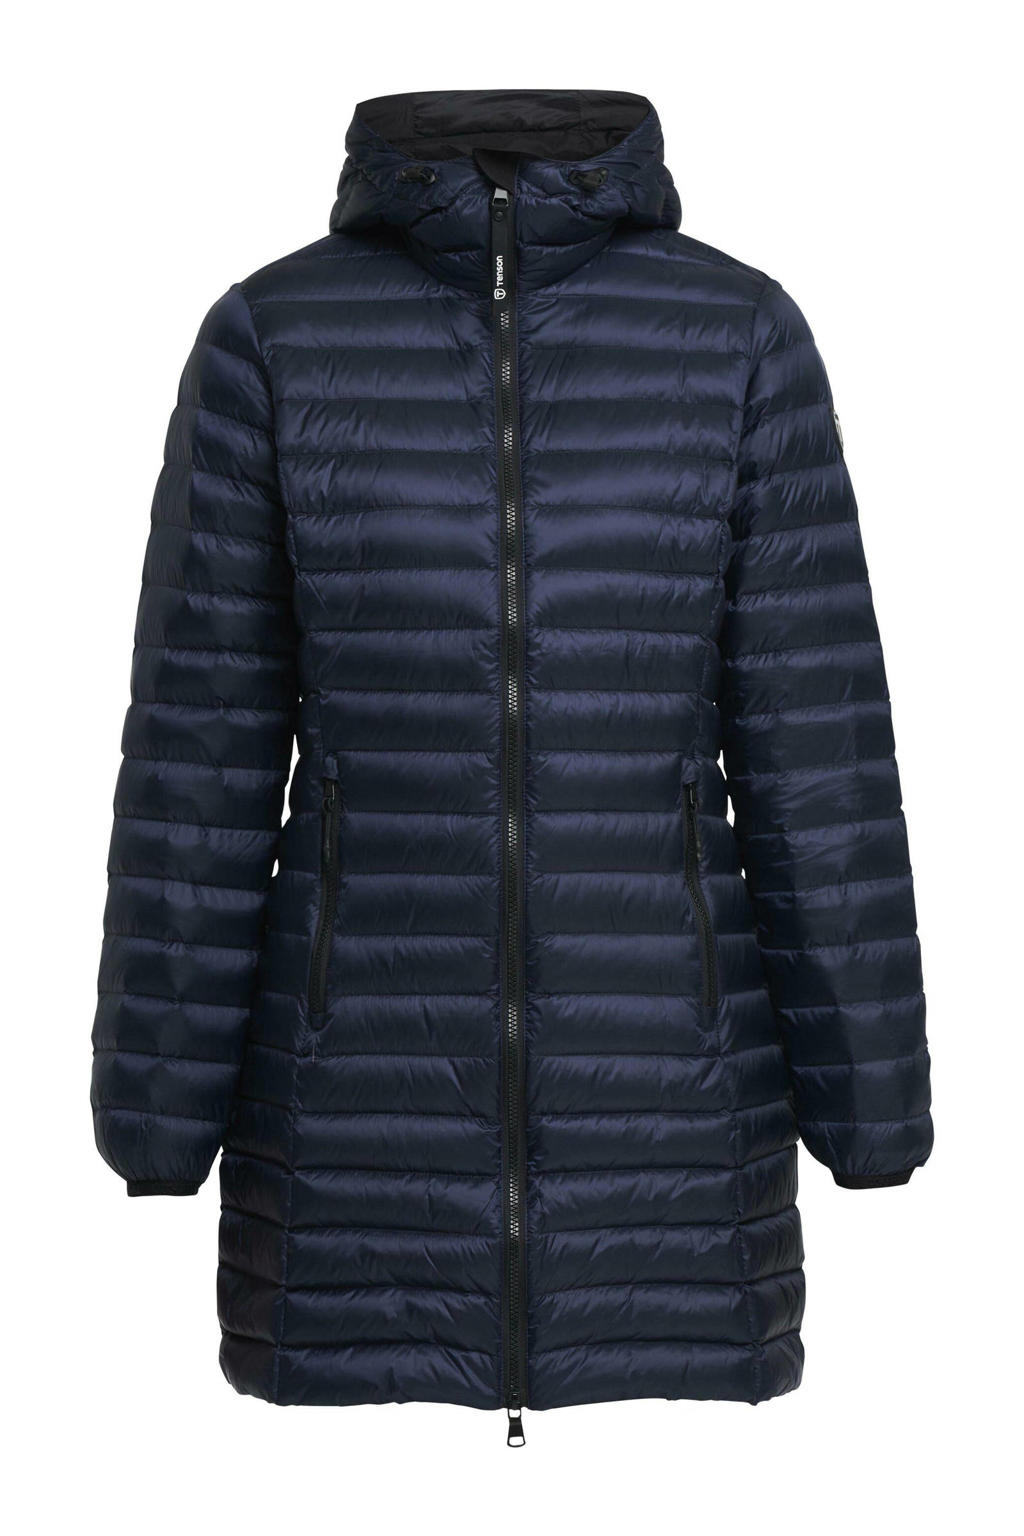 Tenson outdoor jas Dakota donkerblauw